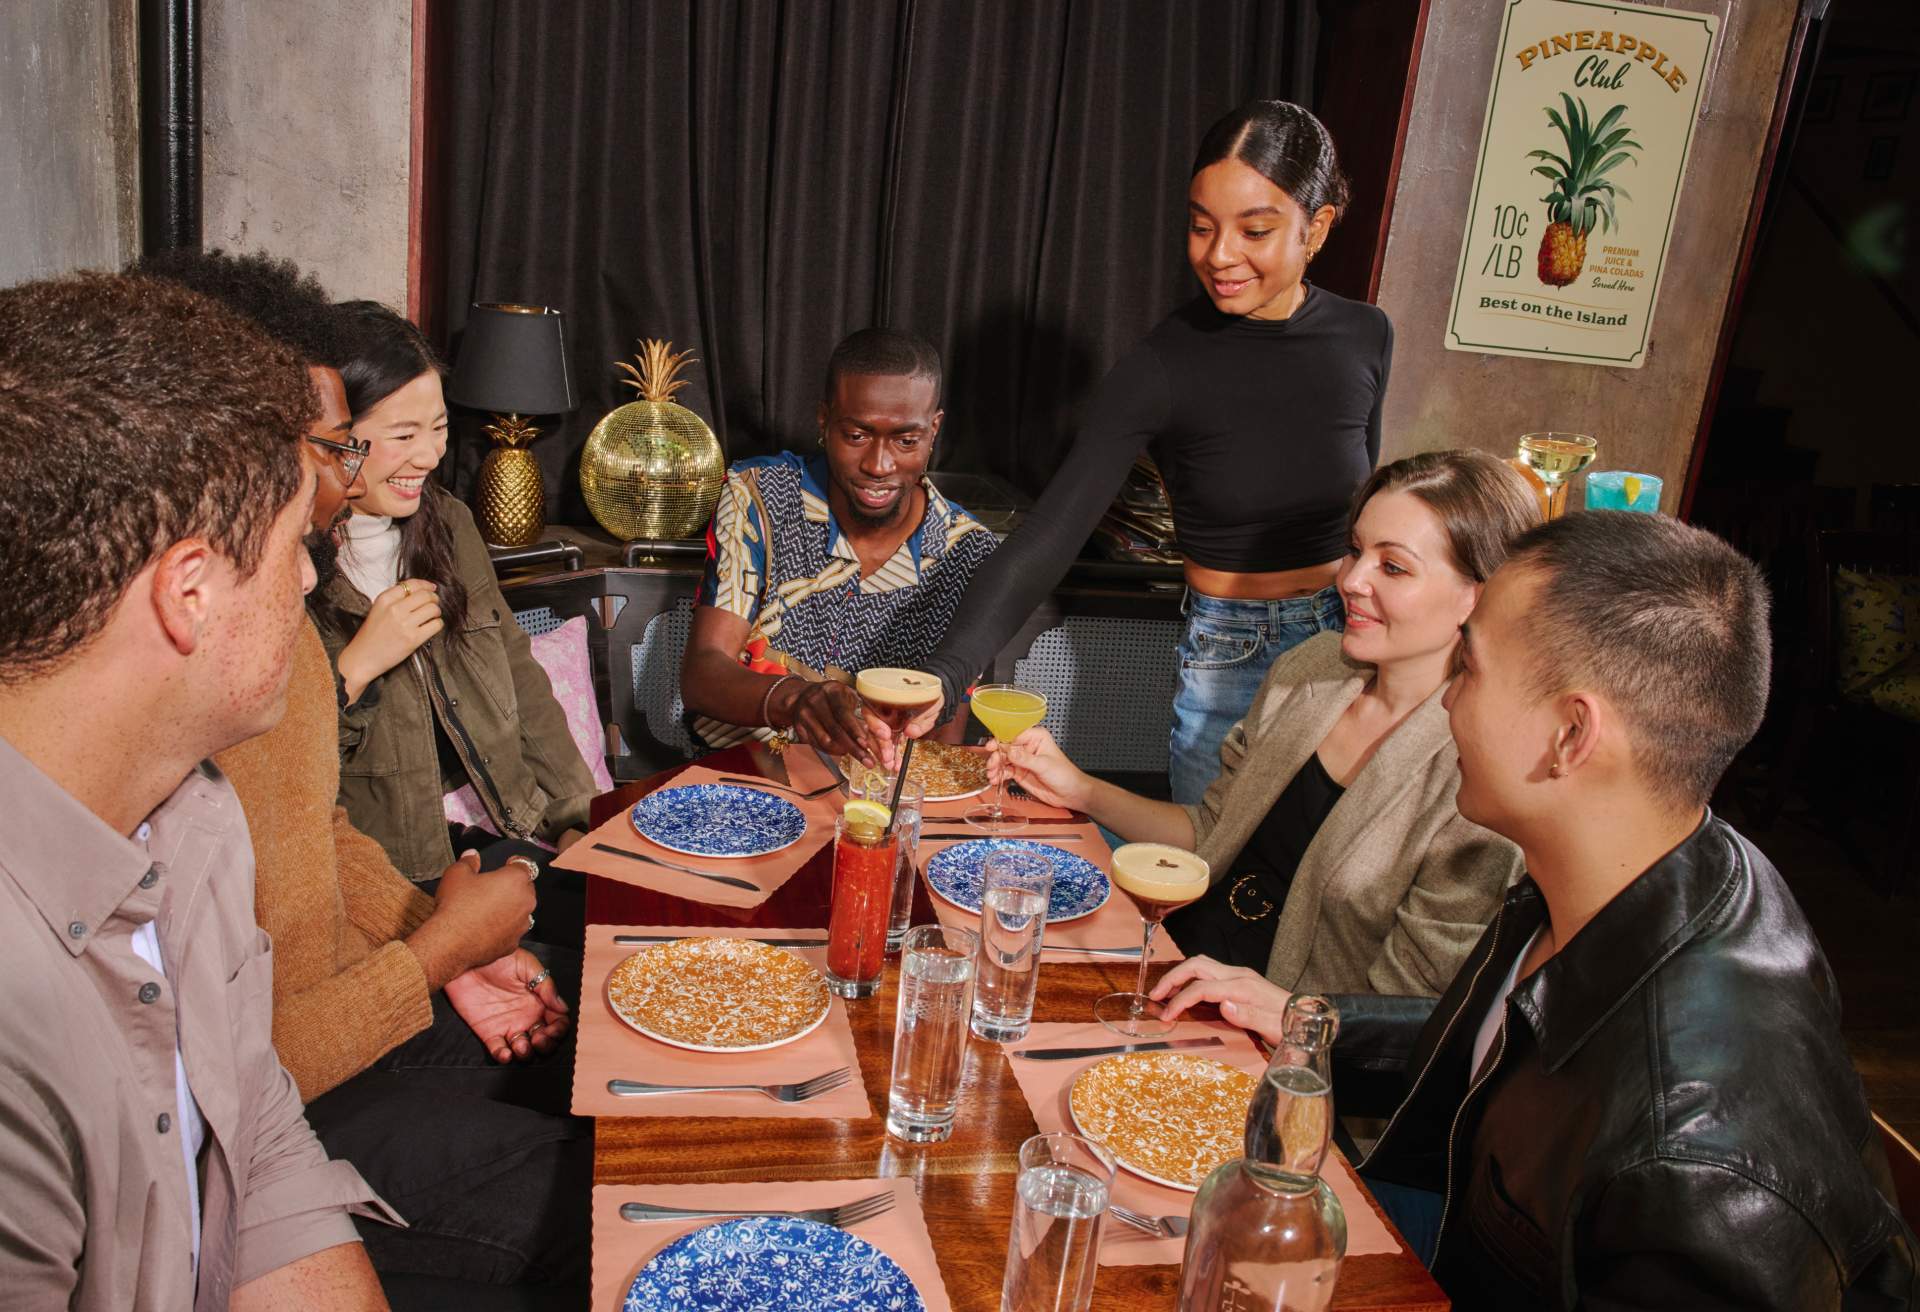 Das Bild zeigt eine große Gruppe von Gästen, die an einem Restauranttisch sitzen, während eine Kellnerin ihnen Getränke serviert